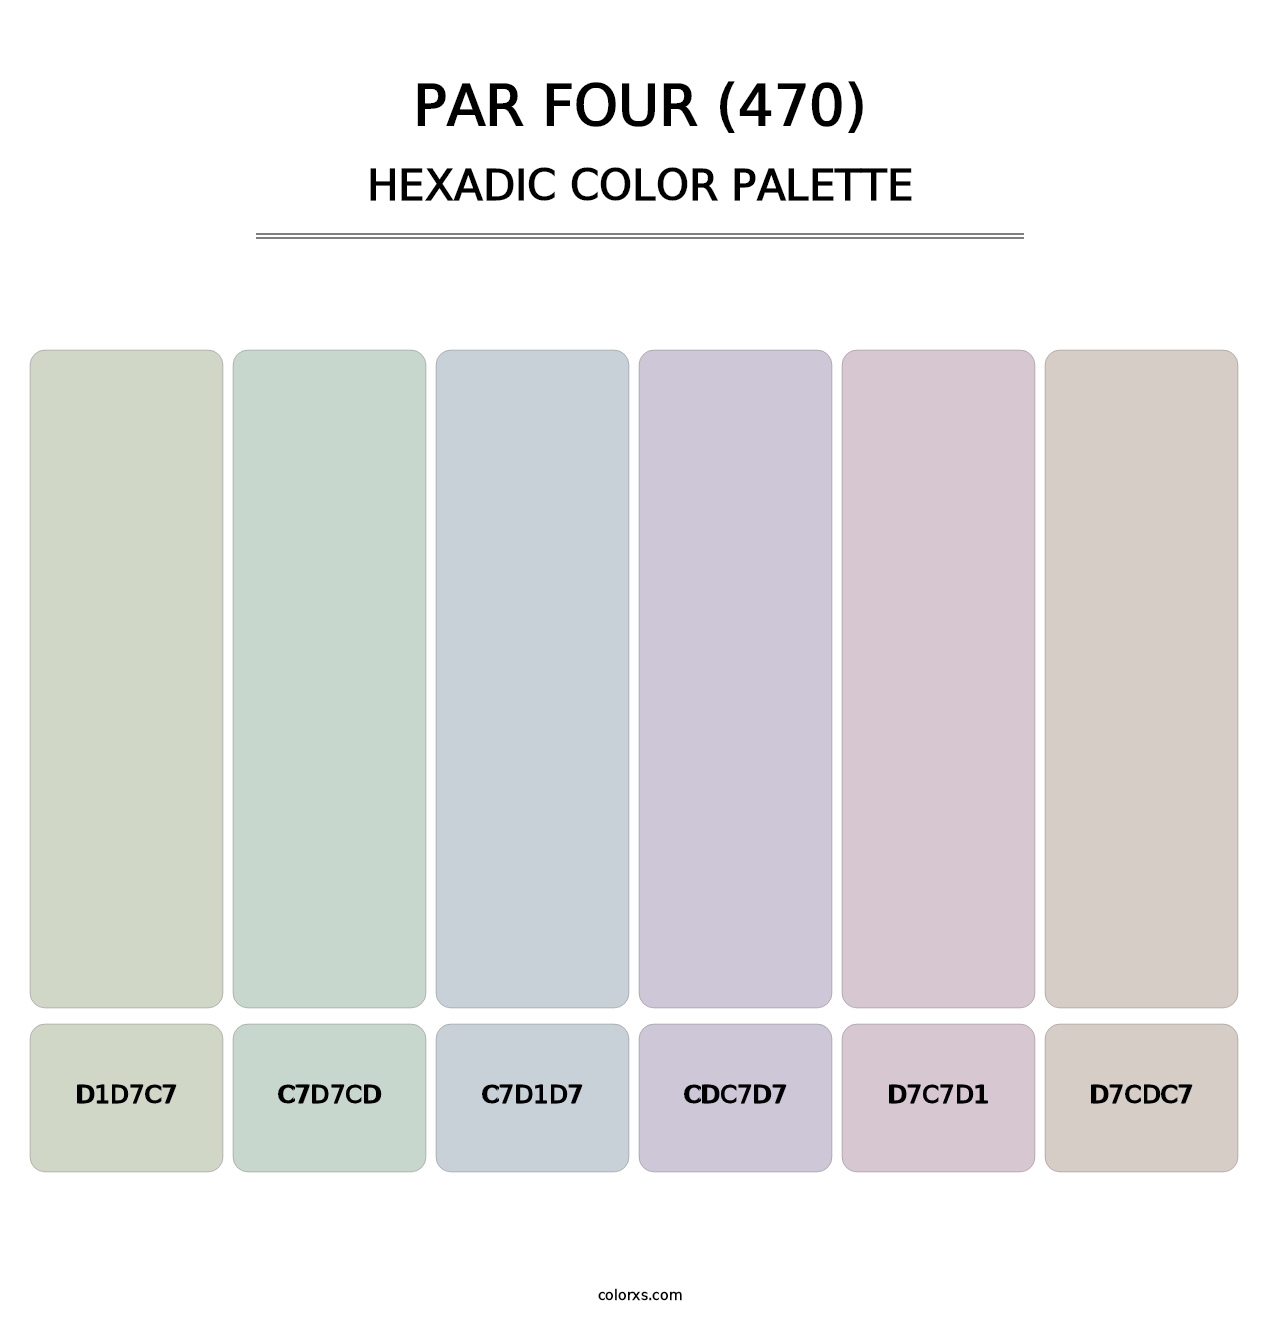 Par Four (470) - Hexadic Color Palette